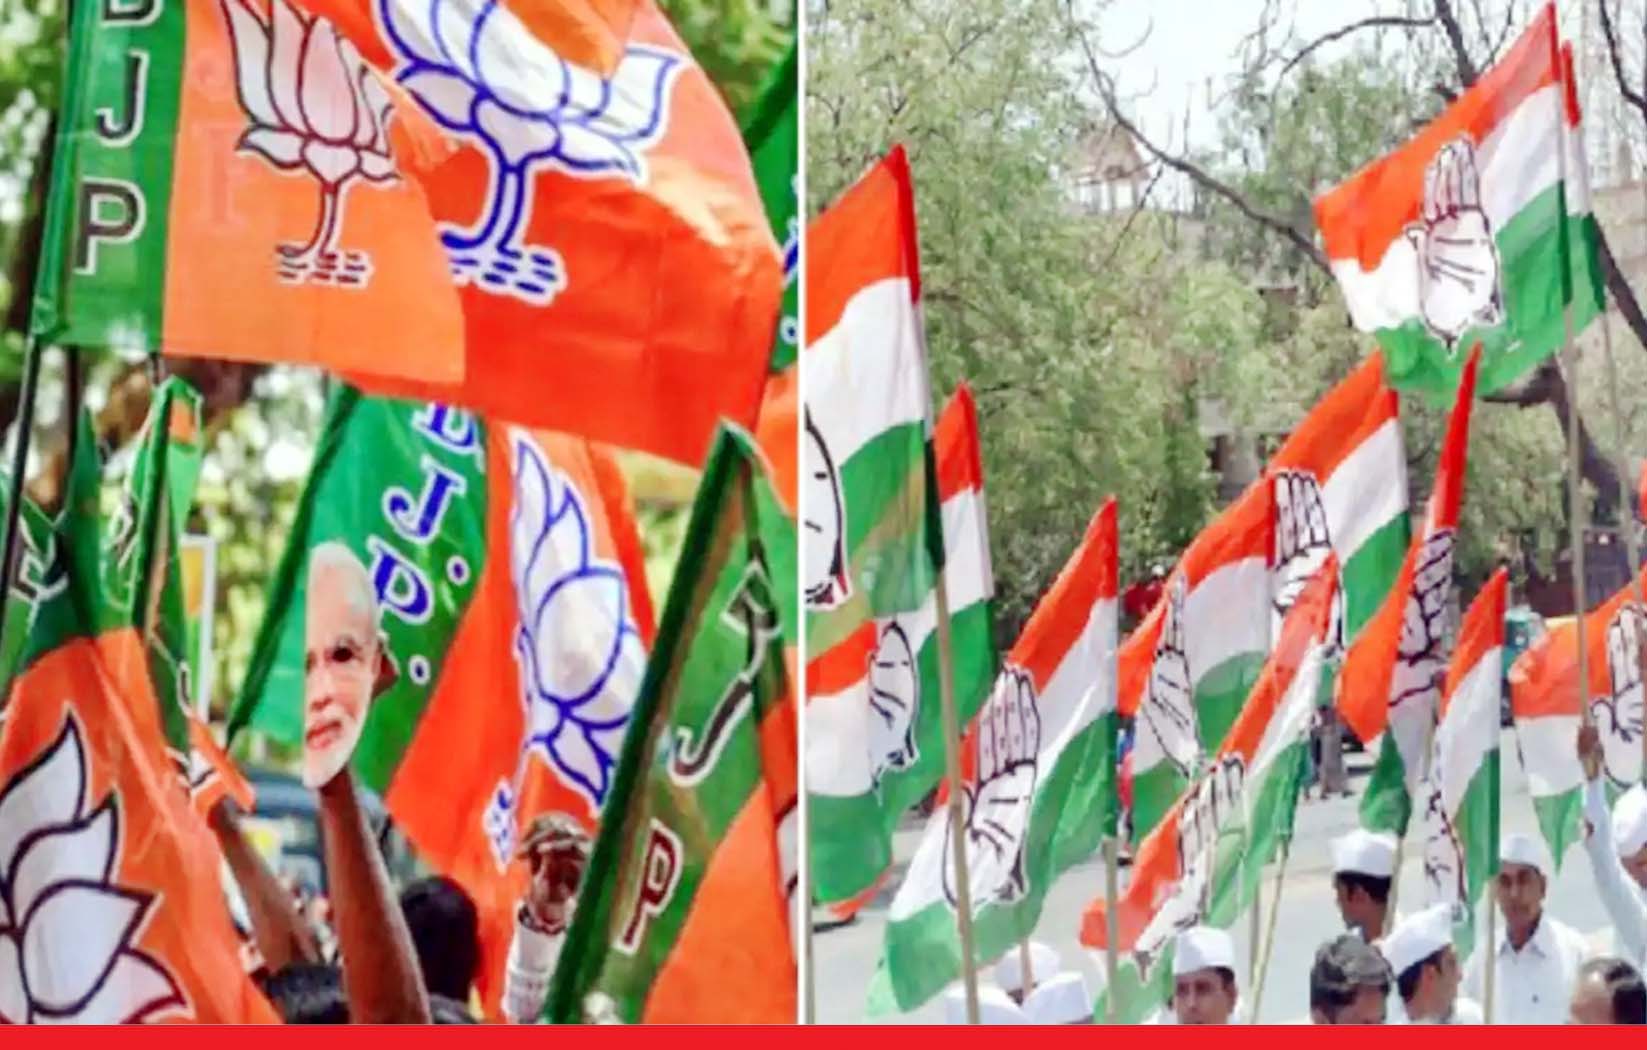 Gujarat Election : बीजेपी के लिए बागी बने सिरदर्द, बगावत पर हैं आमादा, सख्त कार्रवाई का भी नहीं हो रहा असर